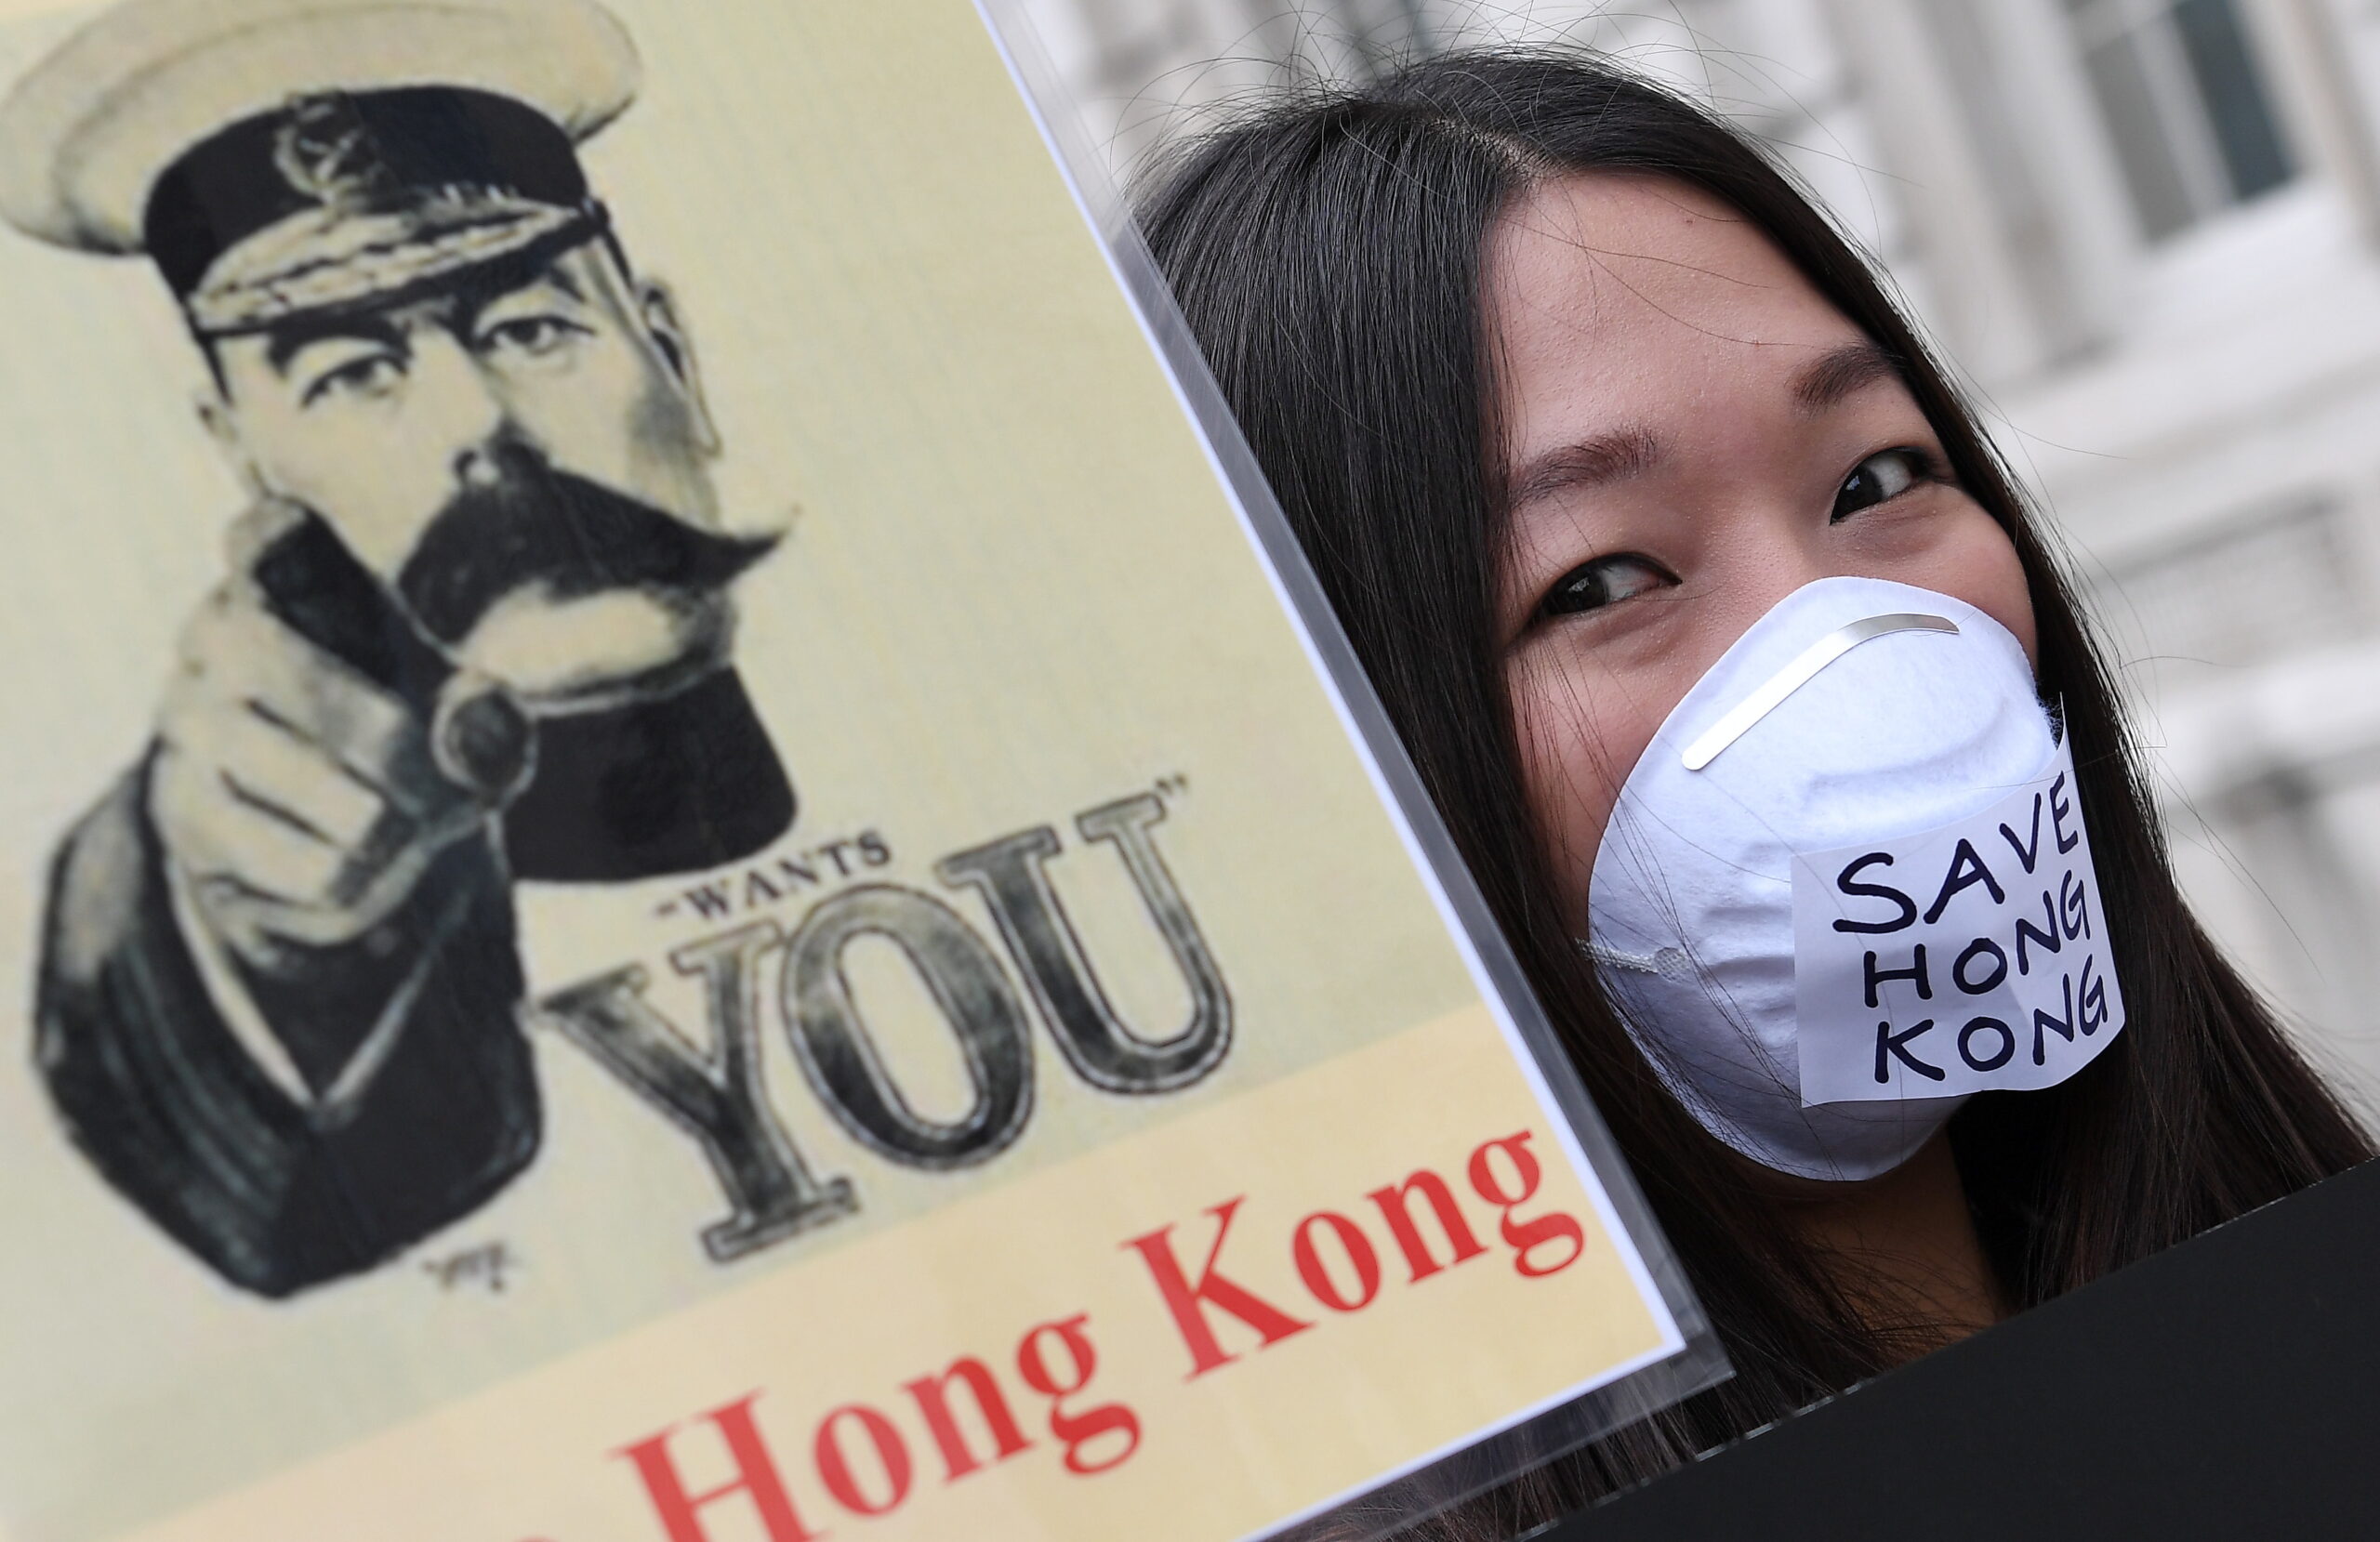  Save Hong Kong protesters 